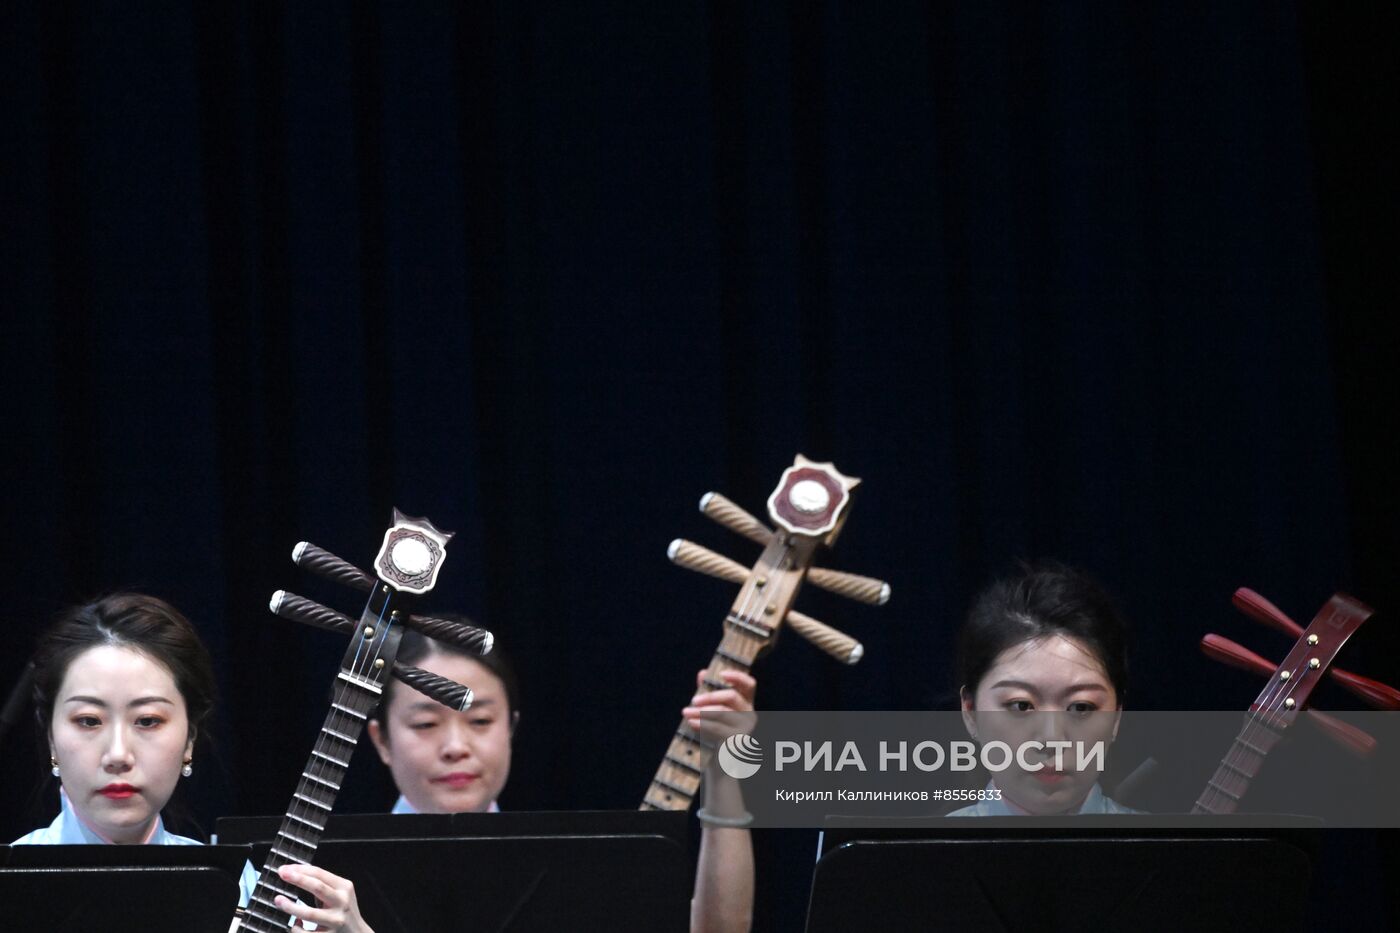 Выступление Национального симфонического оркестра Китайского национального театра оперы и балета 